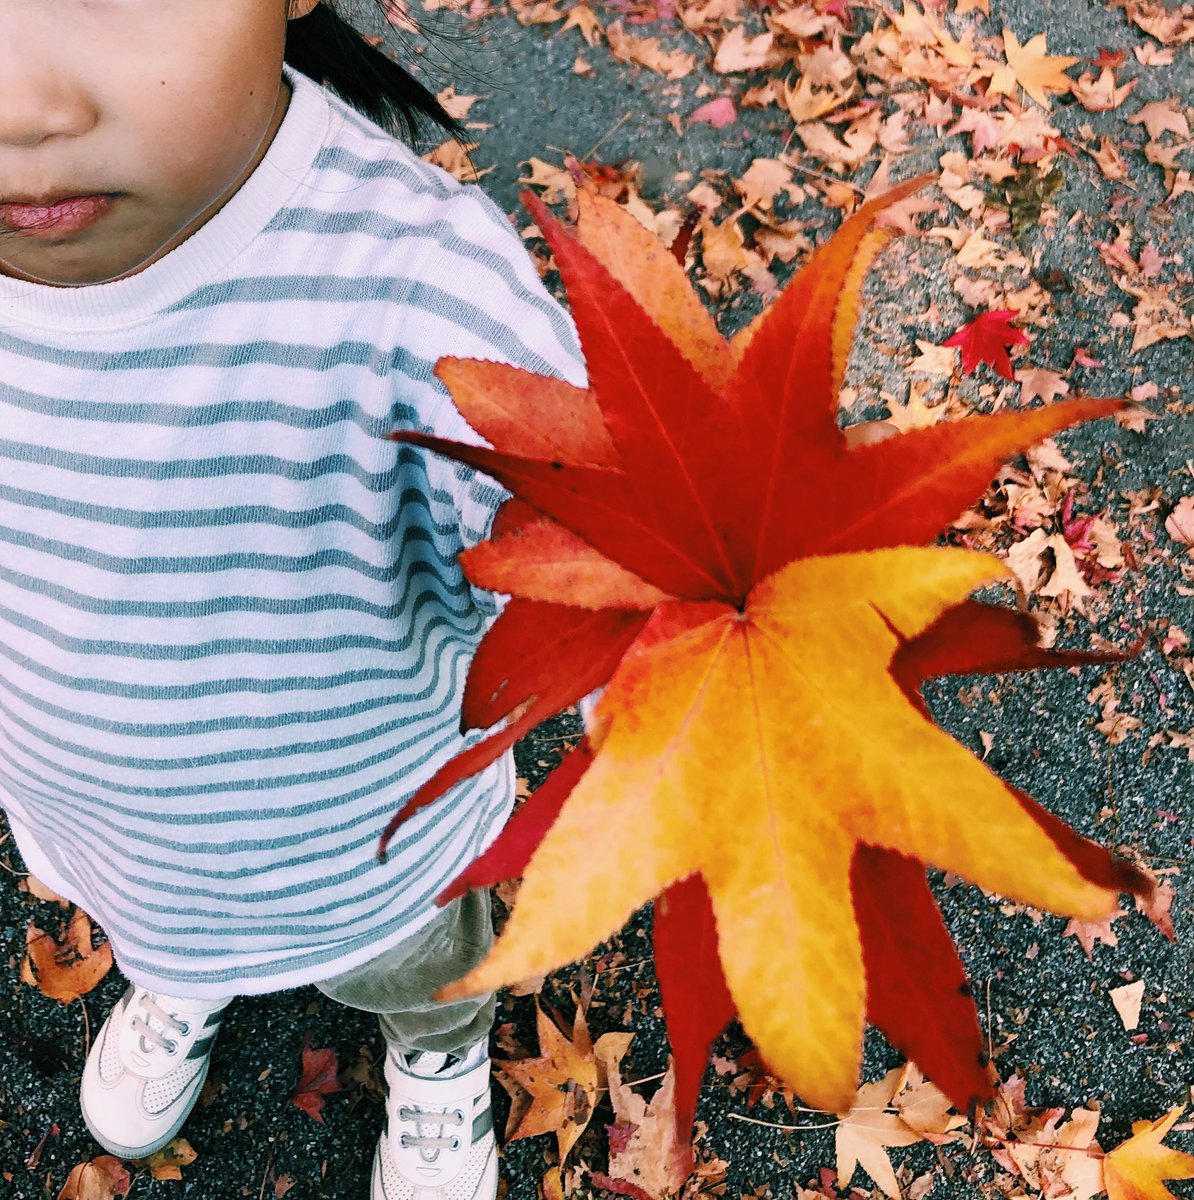 落ち葉のブーケ、(写真の)娘ちゃんの持ってるものより、もっとモリモリしてました。

葉っぱのグラデーションにうっとり。あぁ、きれいだったなぁー。

#今日の娘ちゃん日記 